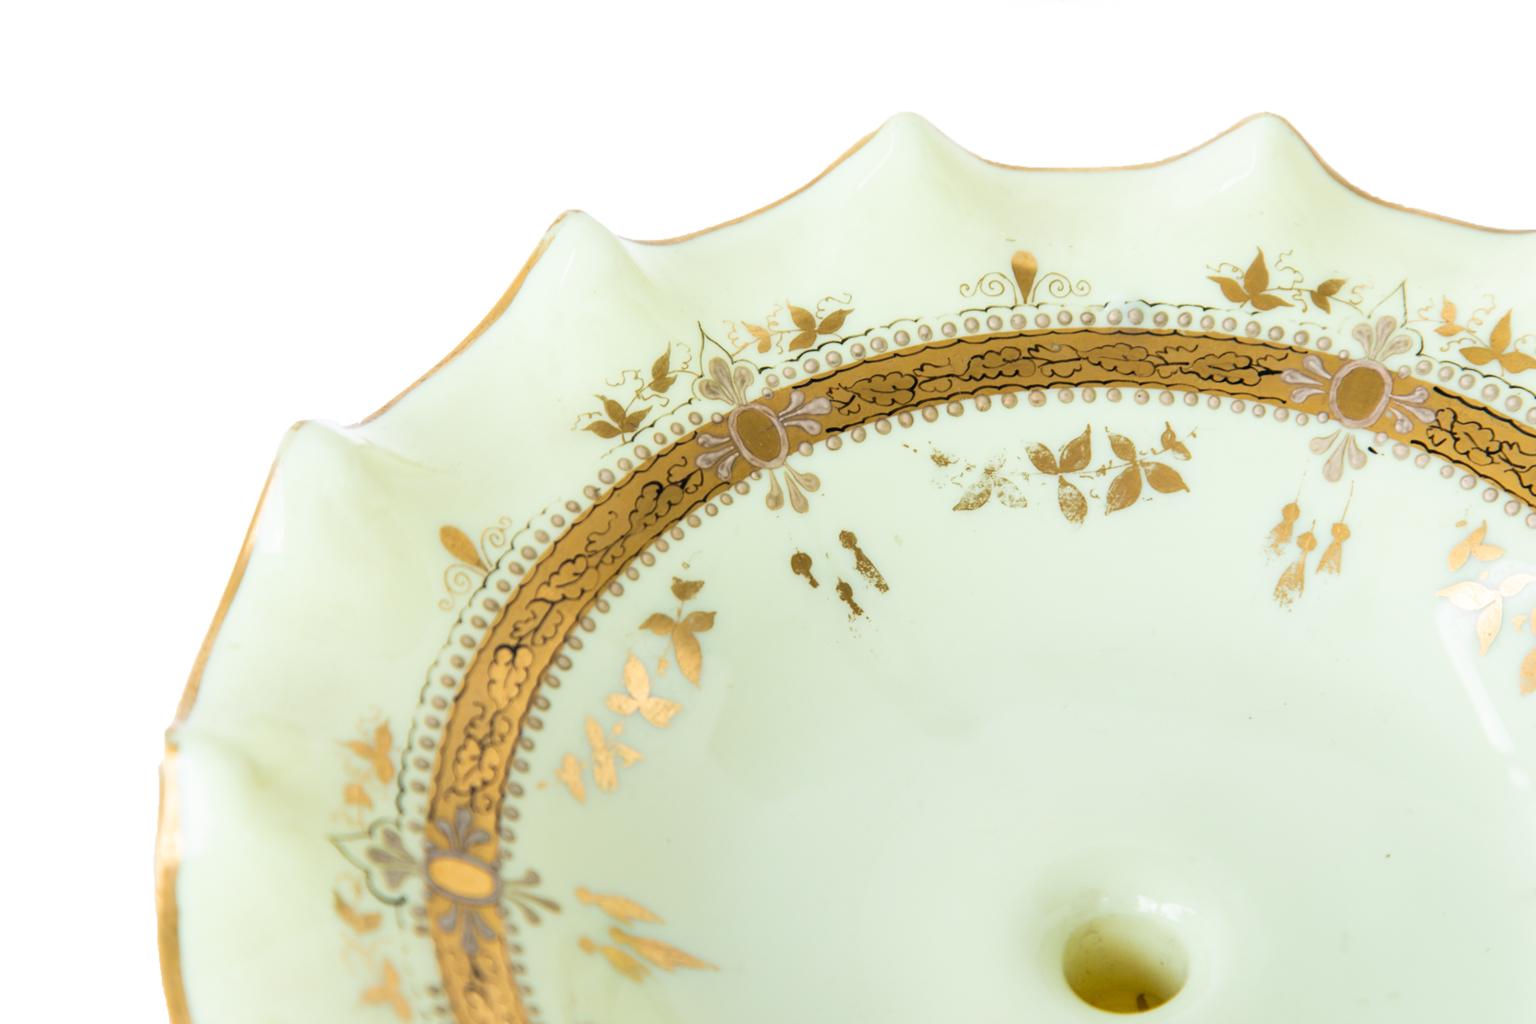 Englisches mundgeblasenes Glaskompott in Celadongrün mit einem Rand aus Tortenkruste. Der Deckel und der Sockel sind mit vergoldeten Verzierungen versehen.
          